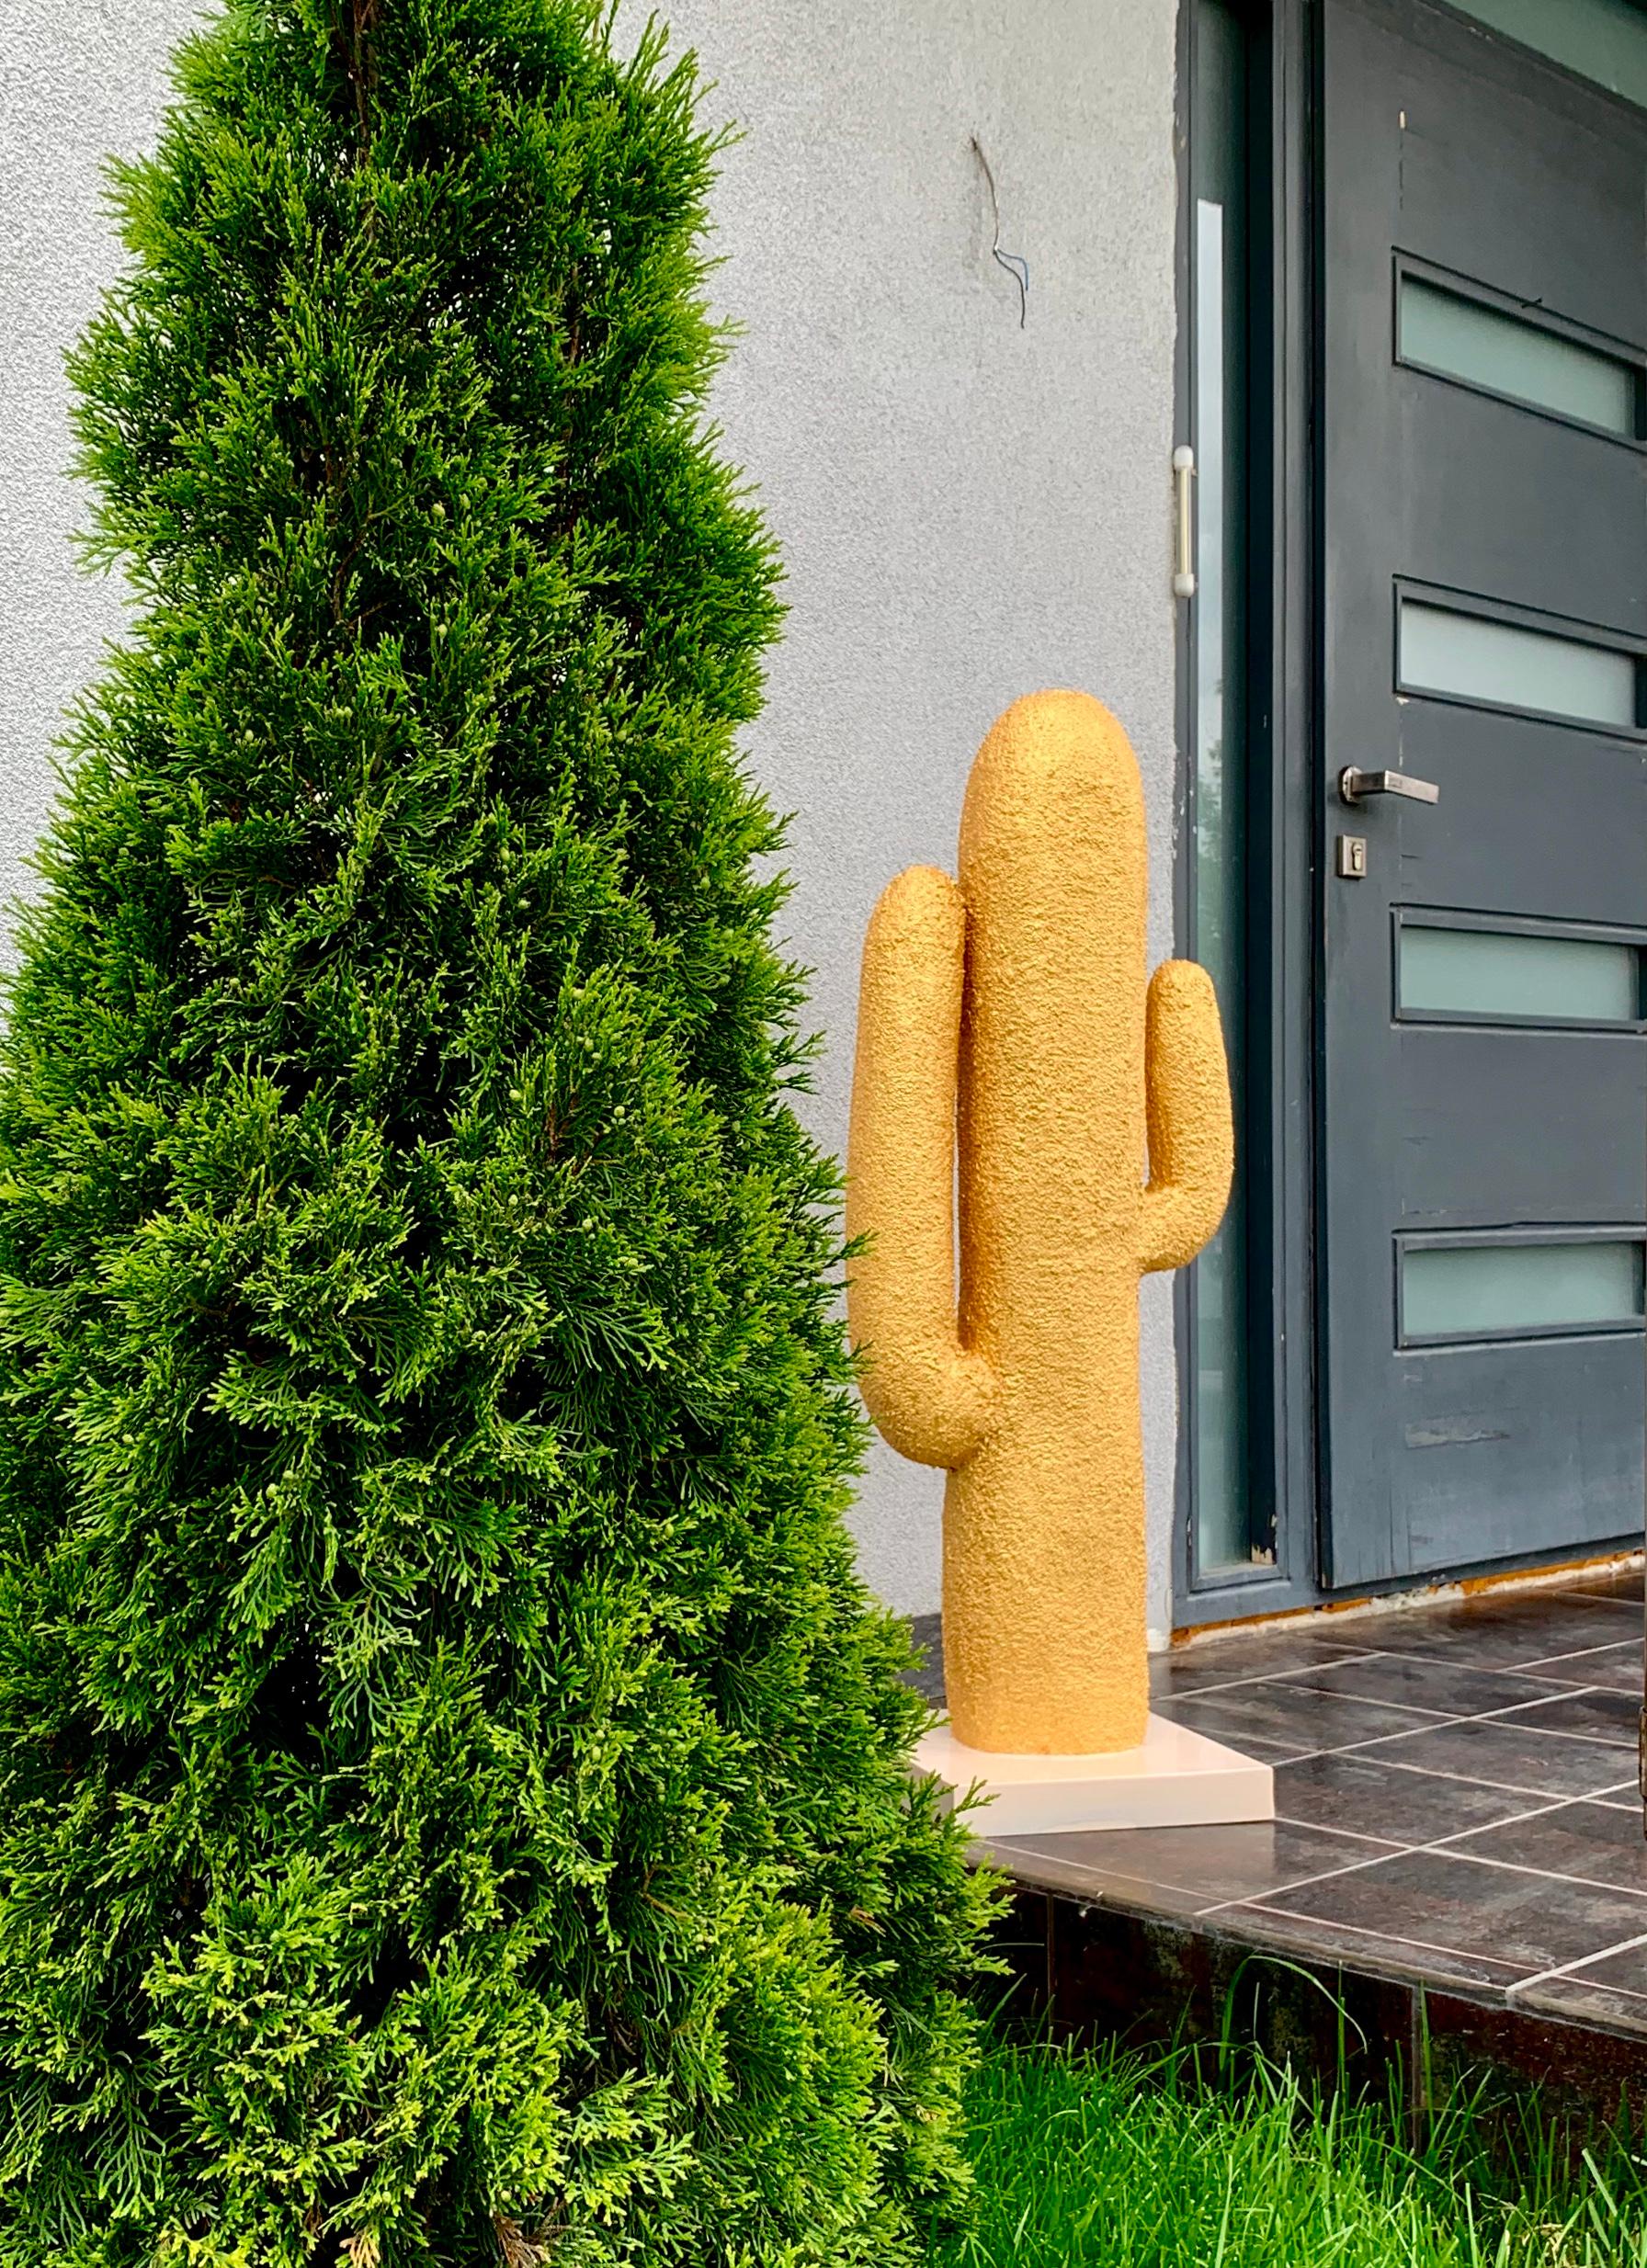 Fabriqué en Ukraine, 2020.

Voici cette grande sculpture intérieure de cactus doré.

Lieu et livraison : Ukraine
Les auteurs : Créé par Rostyslav Kozhman et Iryna Antoniuk (Irena Tone)
MATERIAL : Métal, acrylique, polyuréthane, pâte texturée,